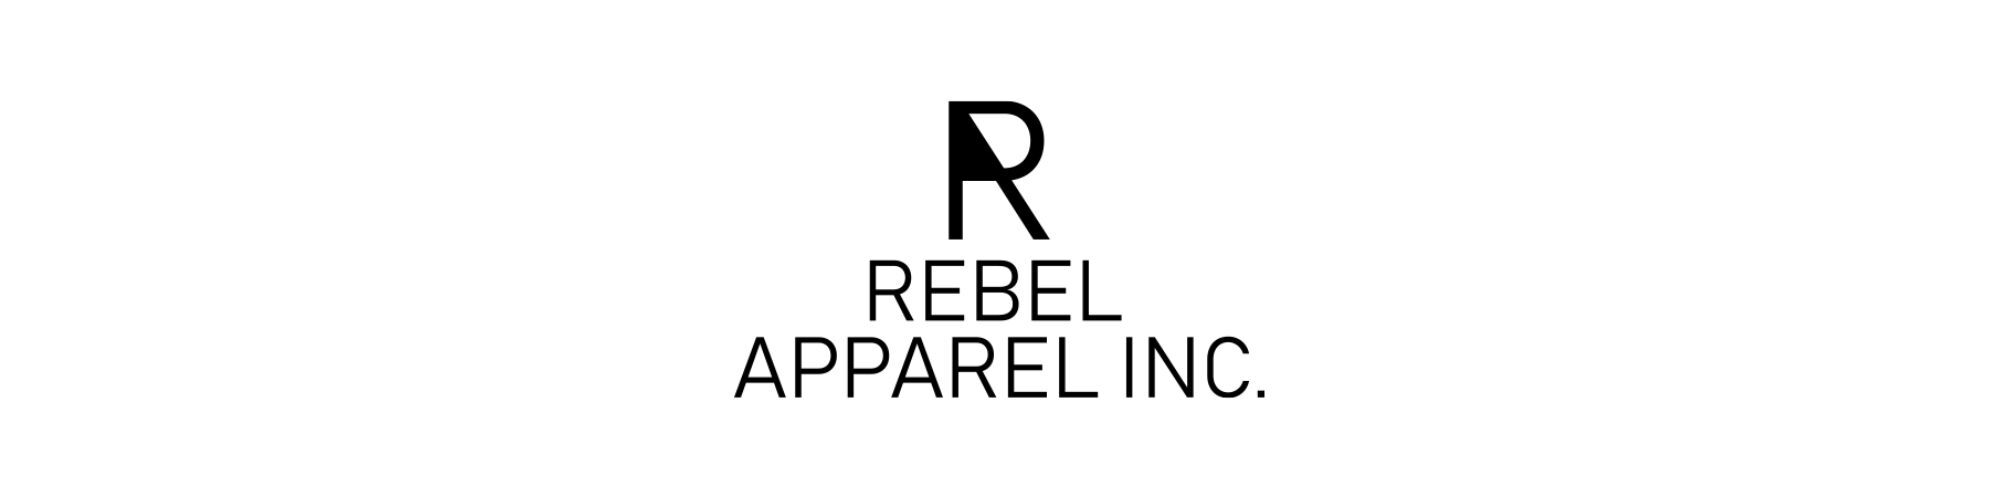 Apparel Inc Rebel 